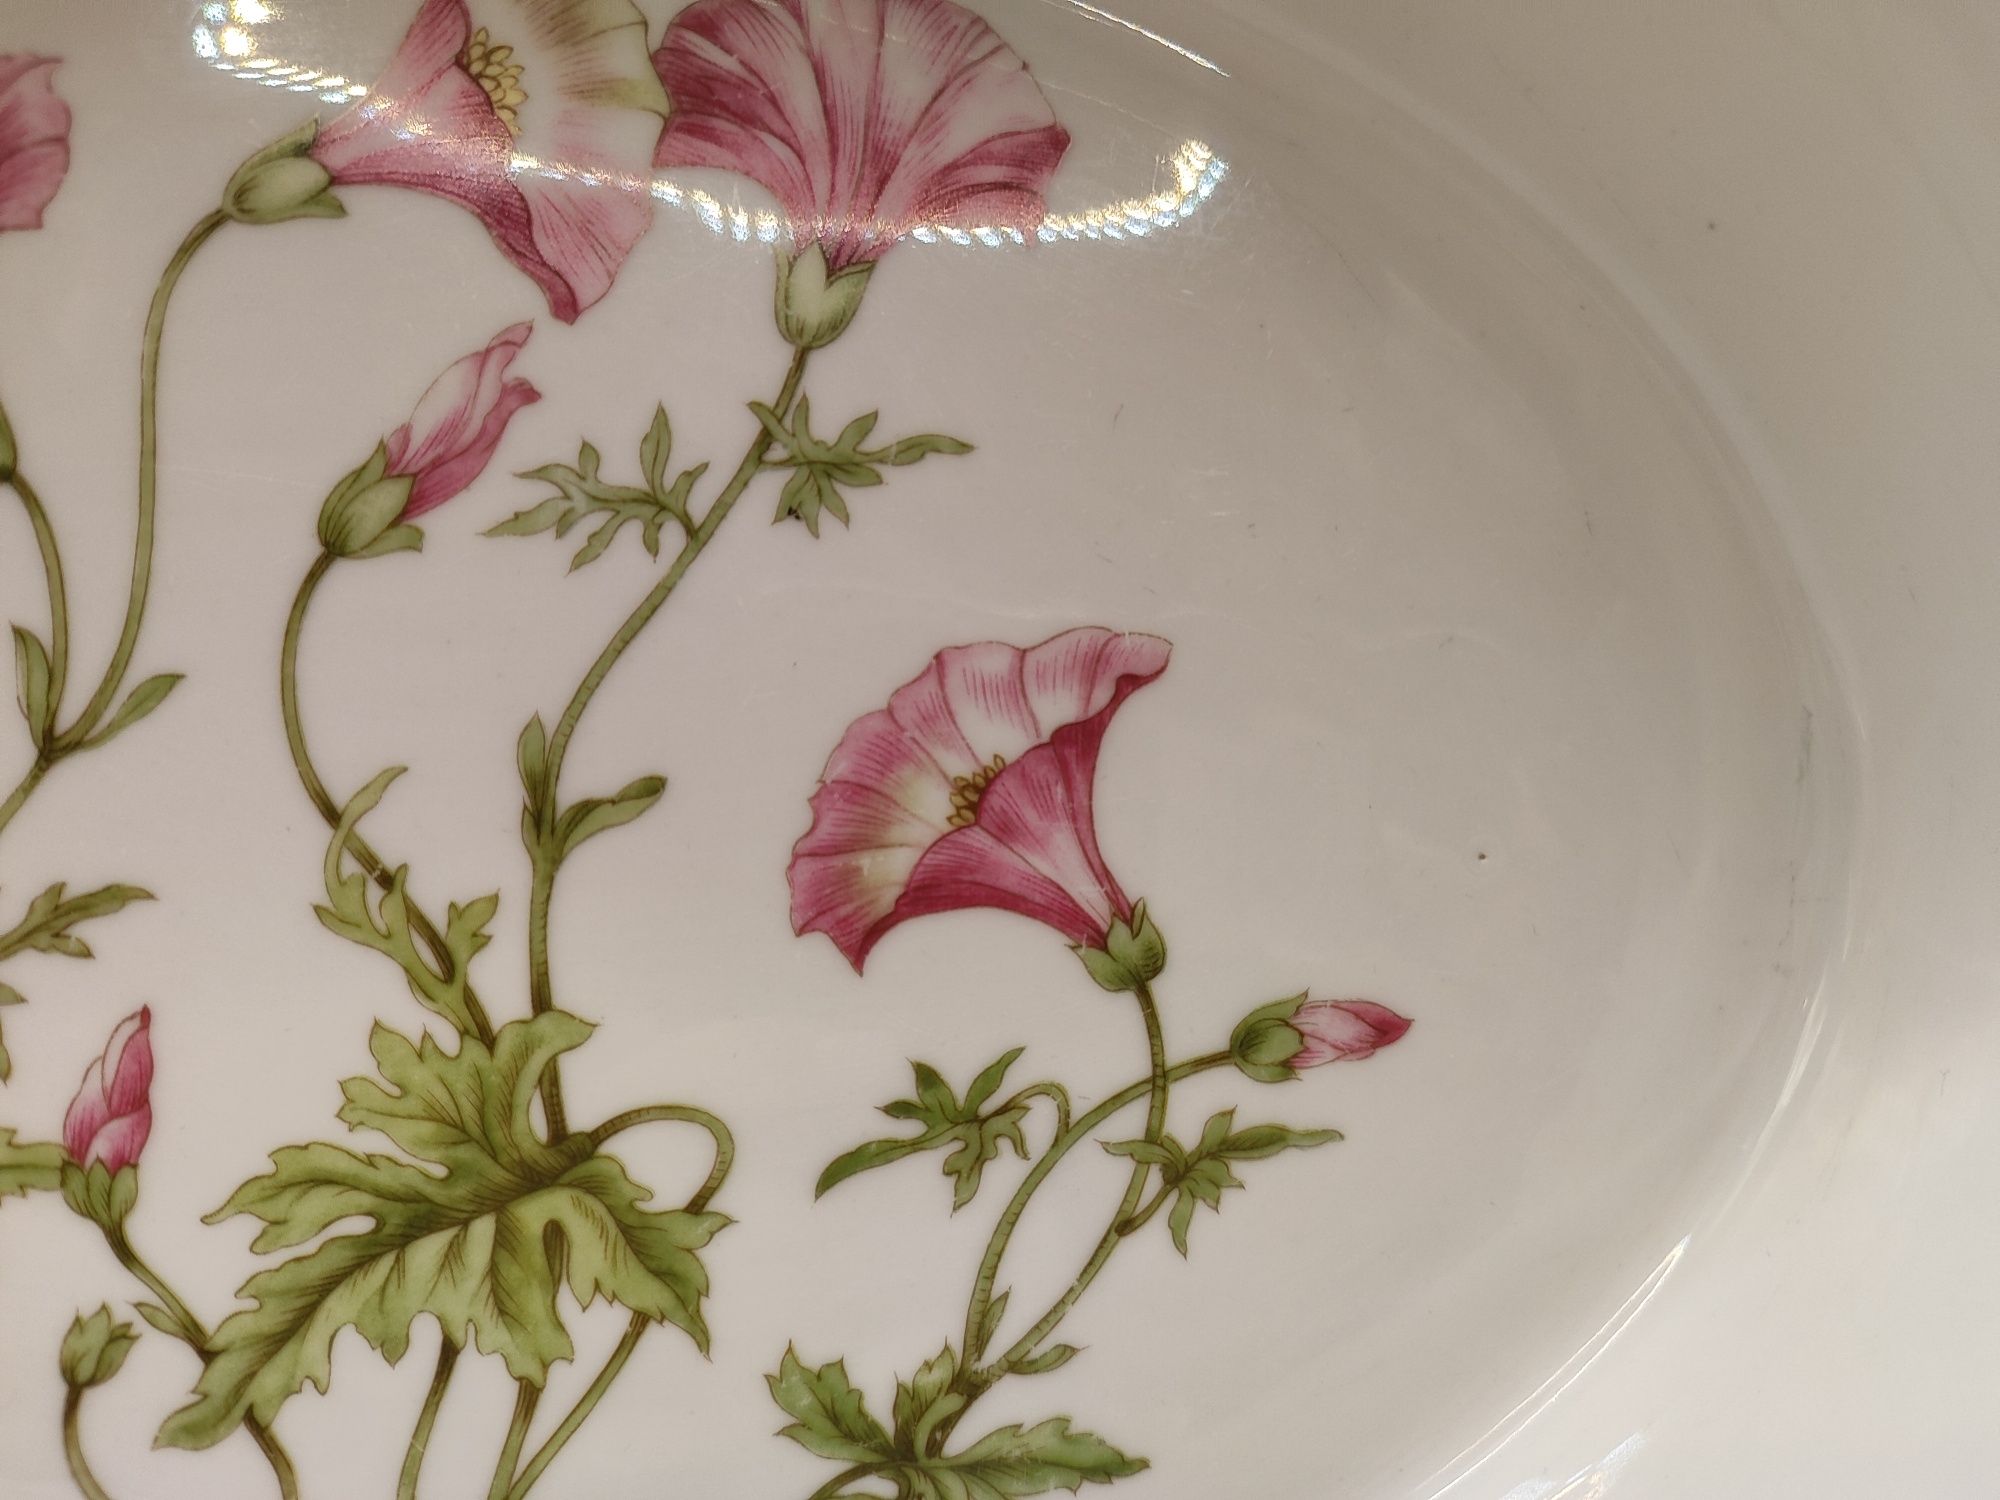 Naczynie pojemnik miska Pillivuyt Francja ceramika kwiaty Vintage